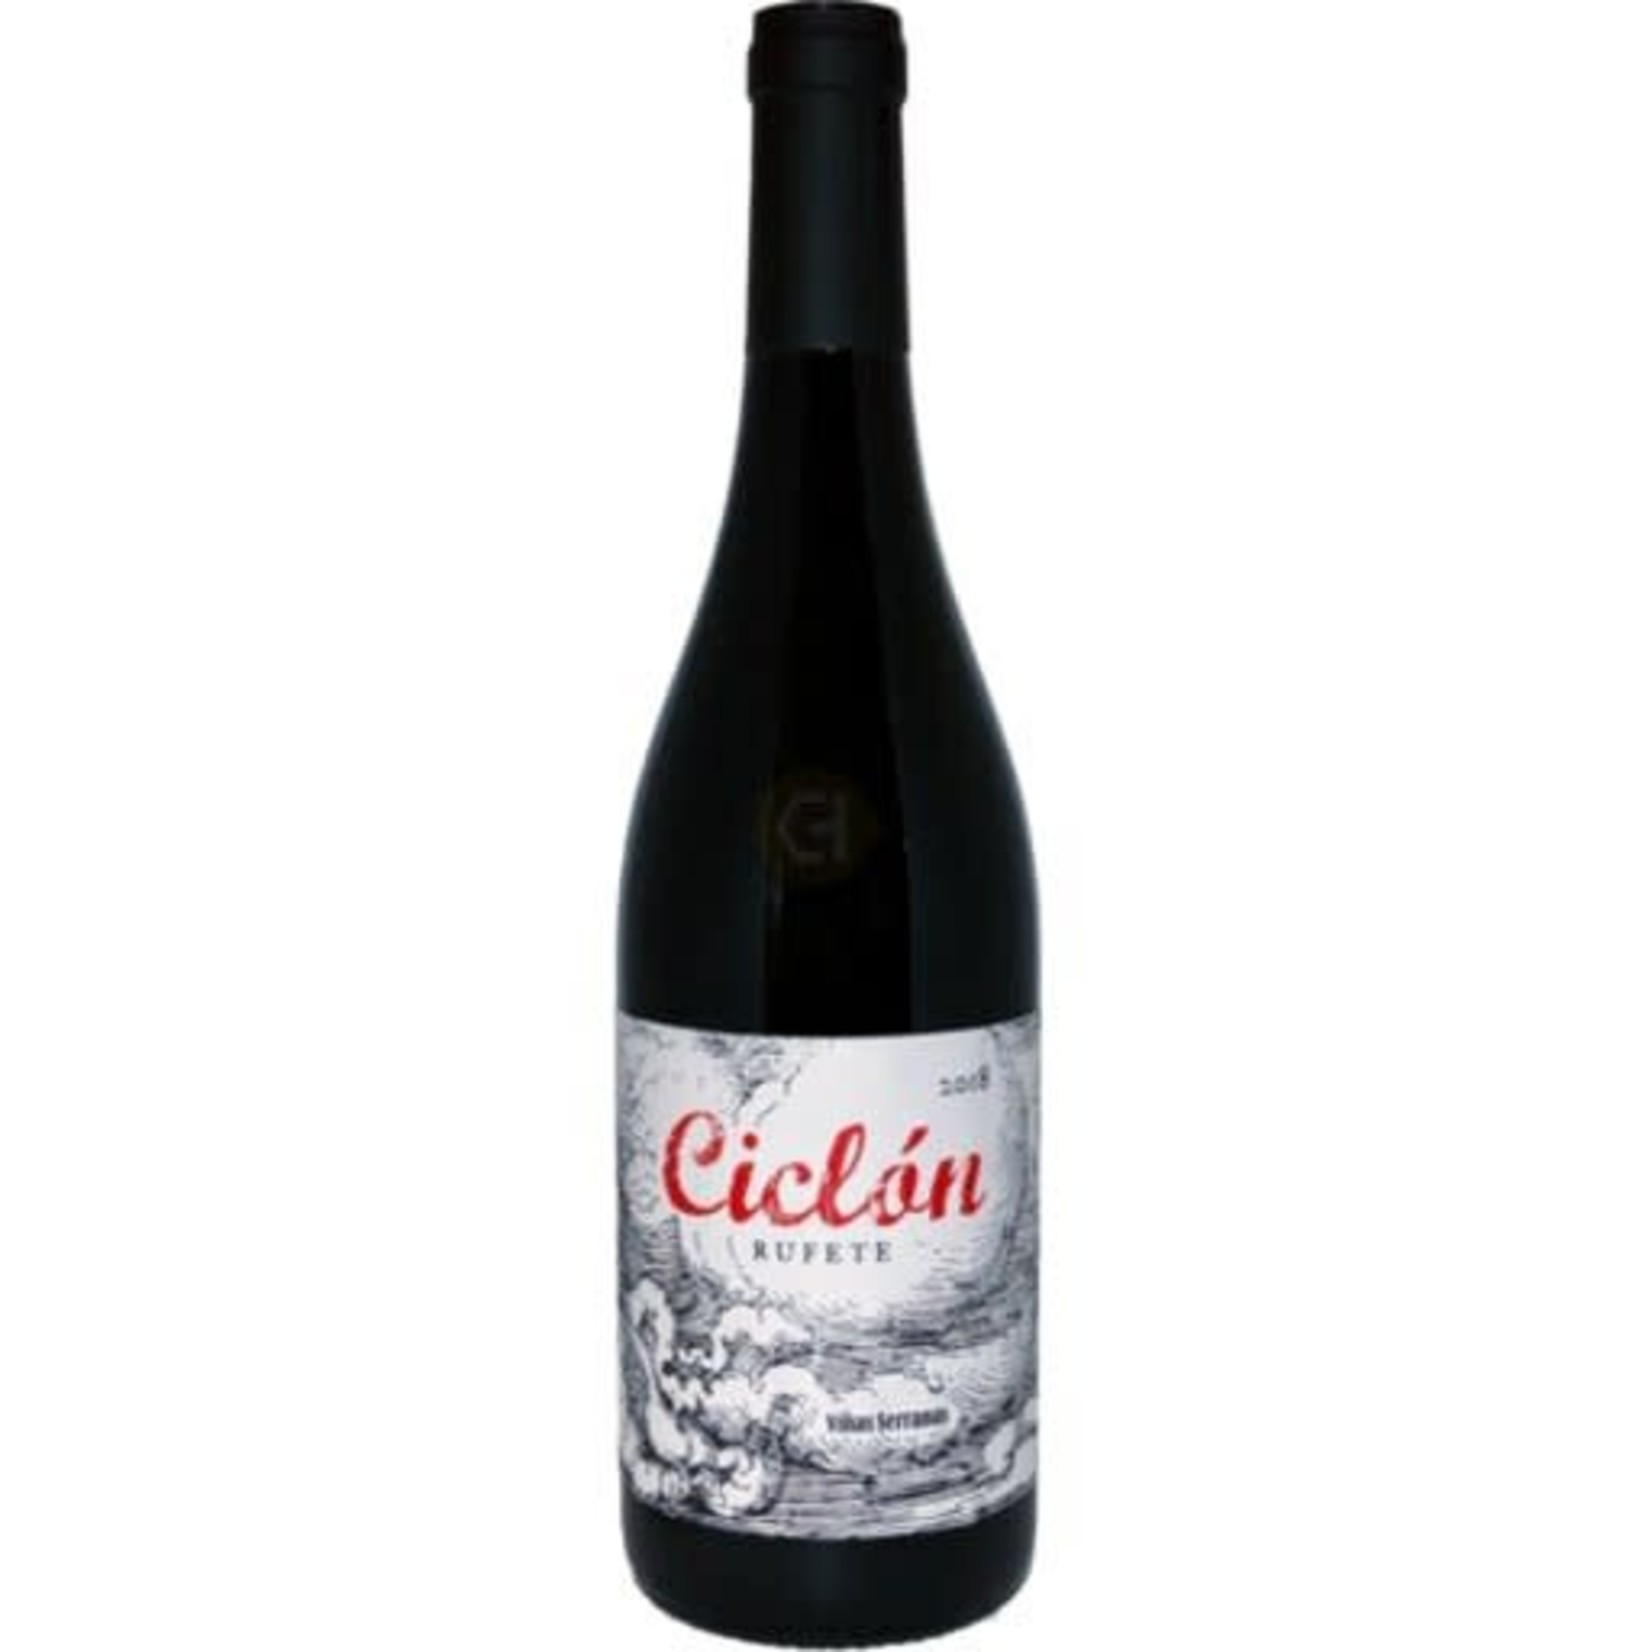 Wine Vinas Serranas 'El Ciclon Serrano' Rufete 2019